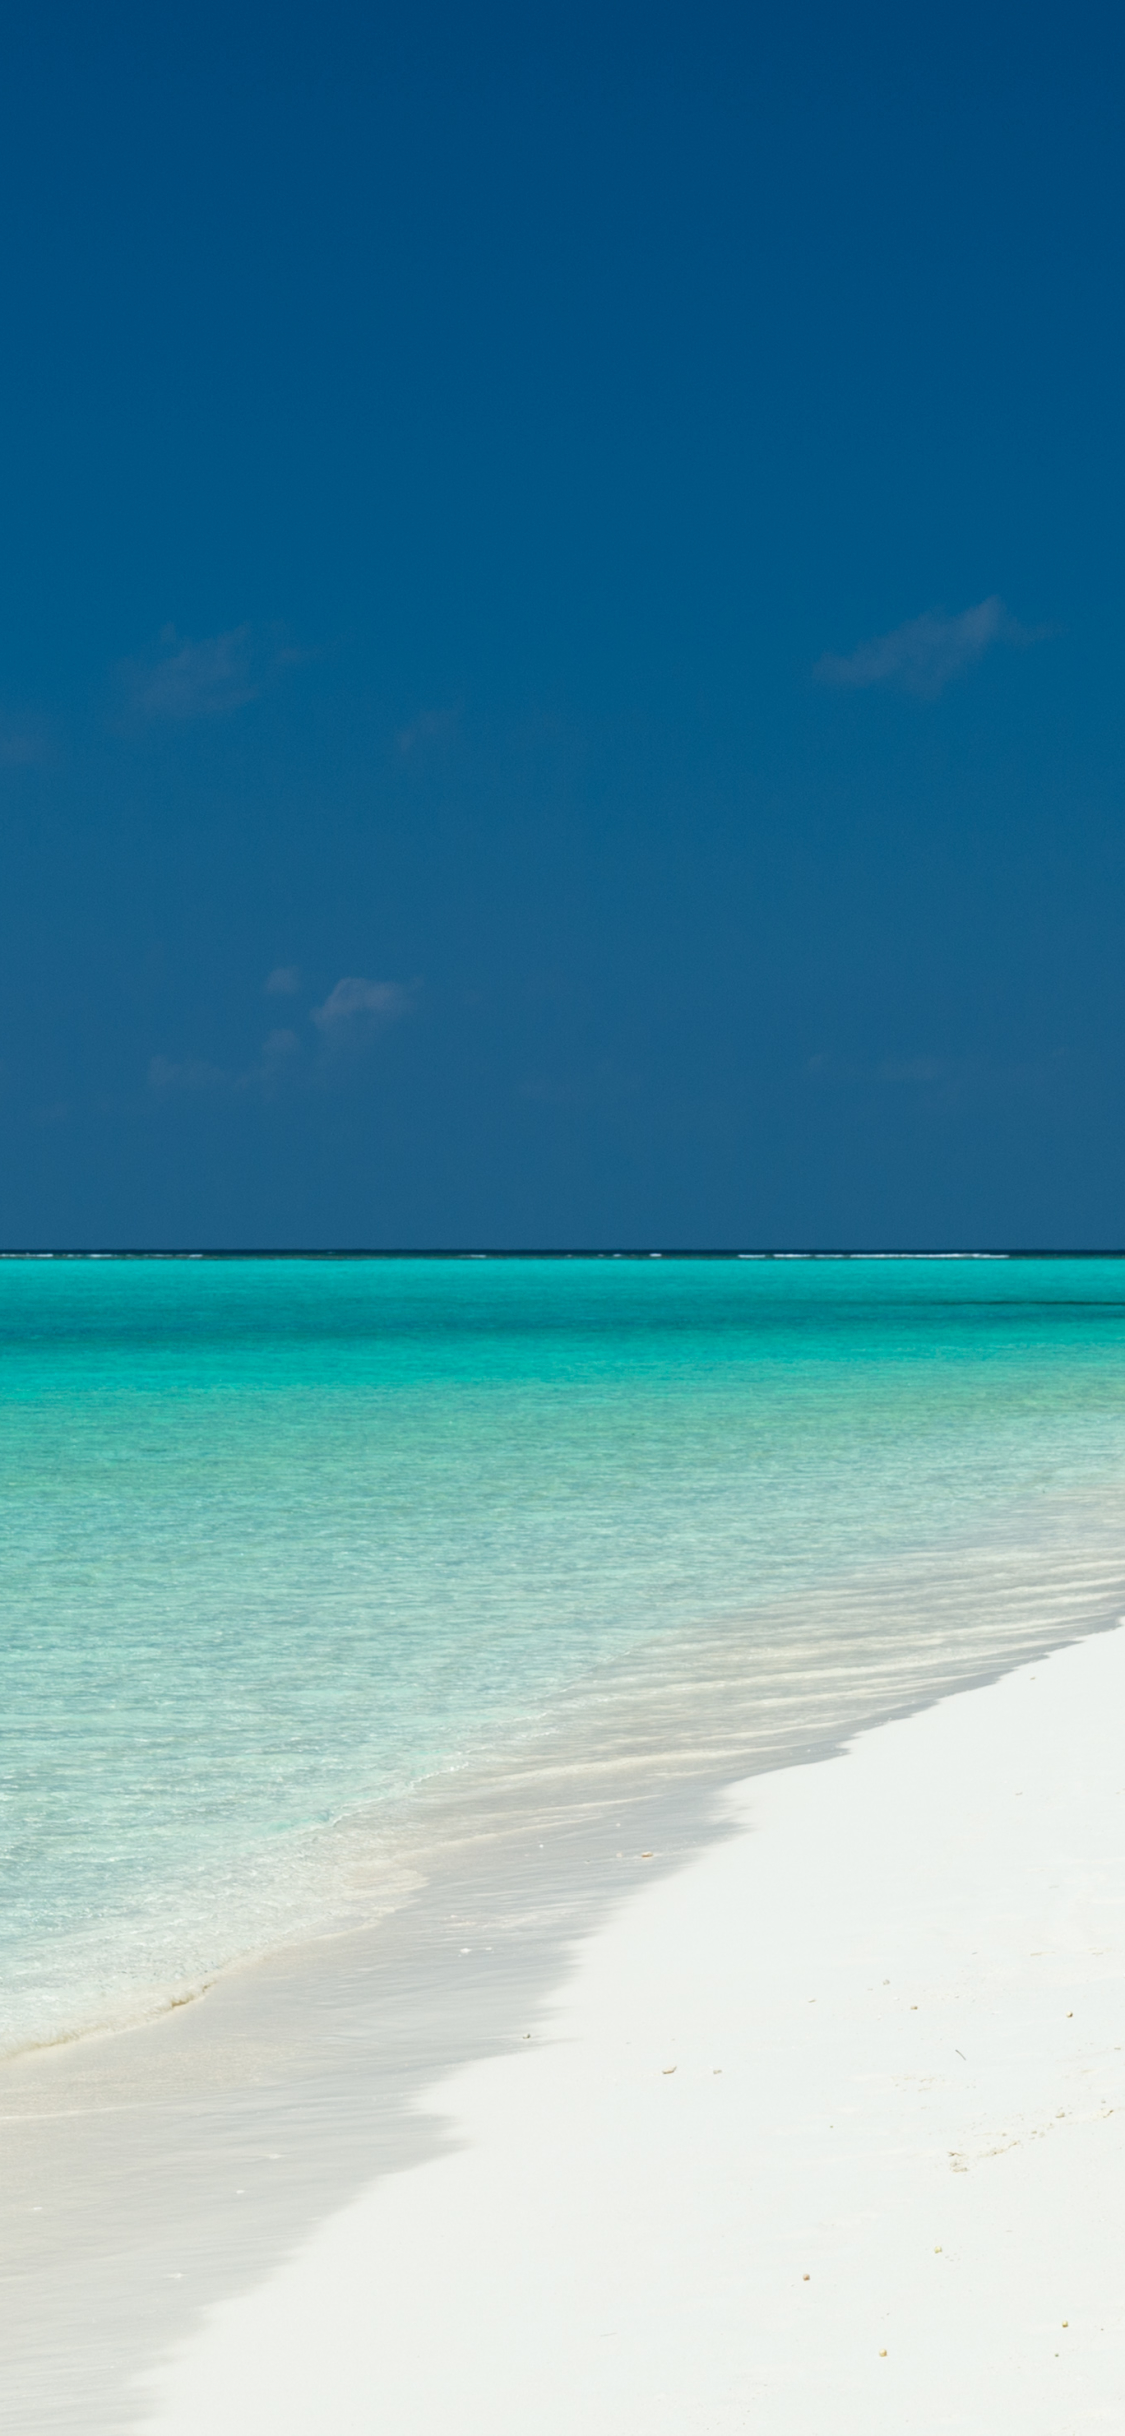 Скачать картинку Море, Горизонт, Океан, Тропический, Мальдивы, Бирюзовый, Земля/природа в телефон бесплатно.